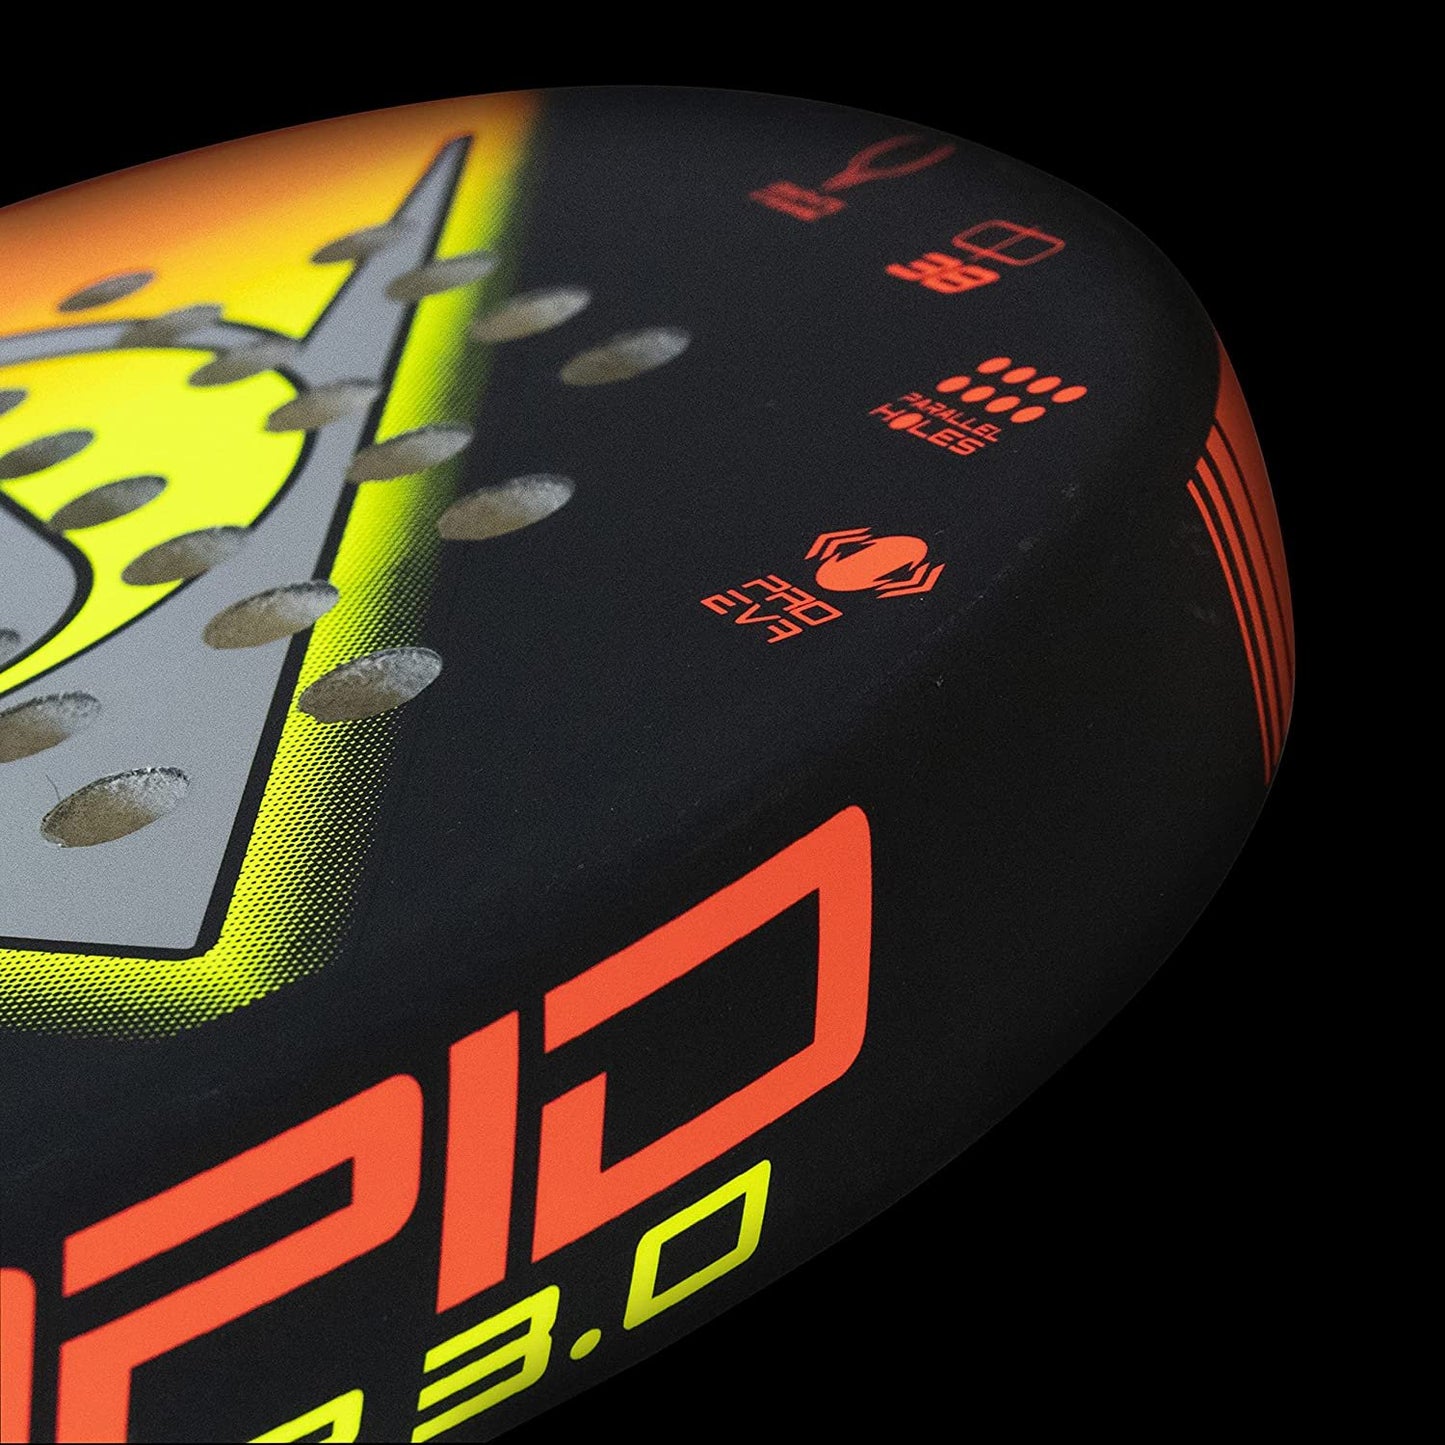 Dunlop Rapid Power 3.0 Padel Racket, Black/Orange/Yellow